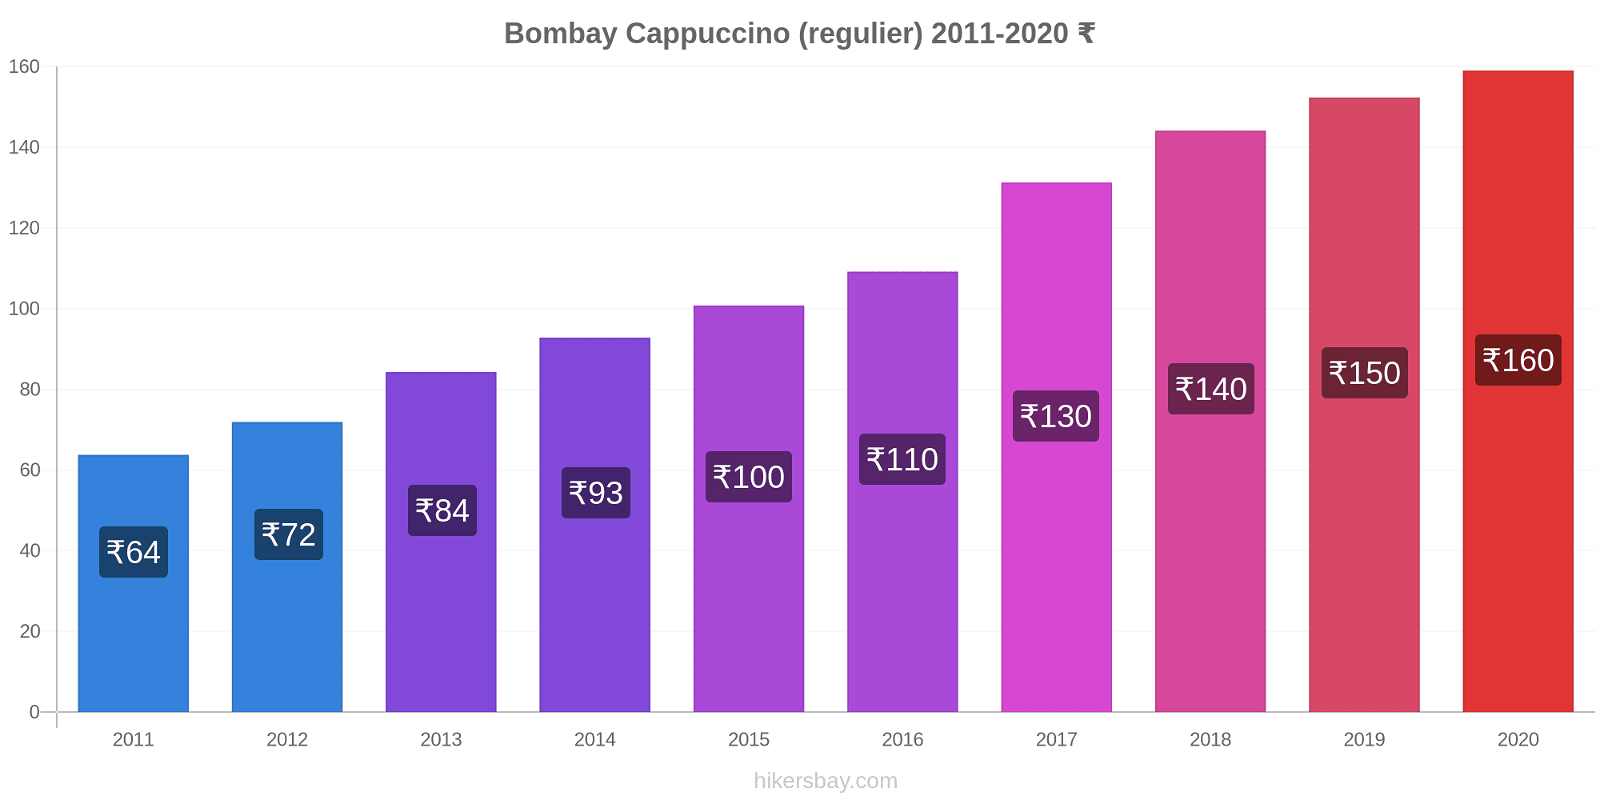 Bombay prijswijzigingen Cappuccino (regelmatige) hikersbay.com